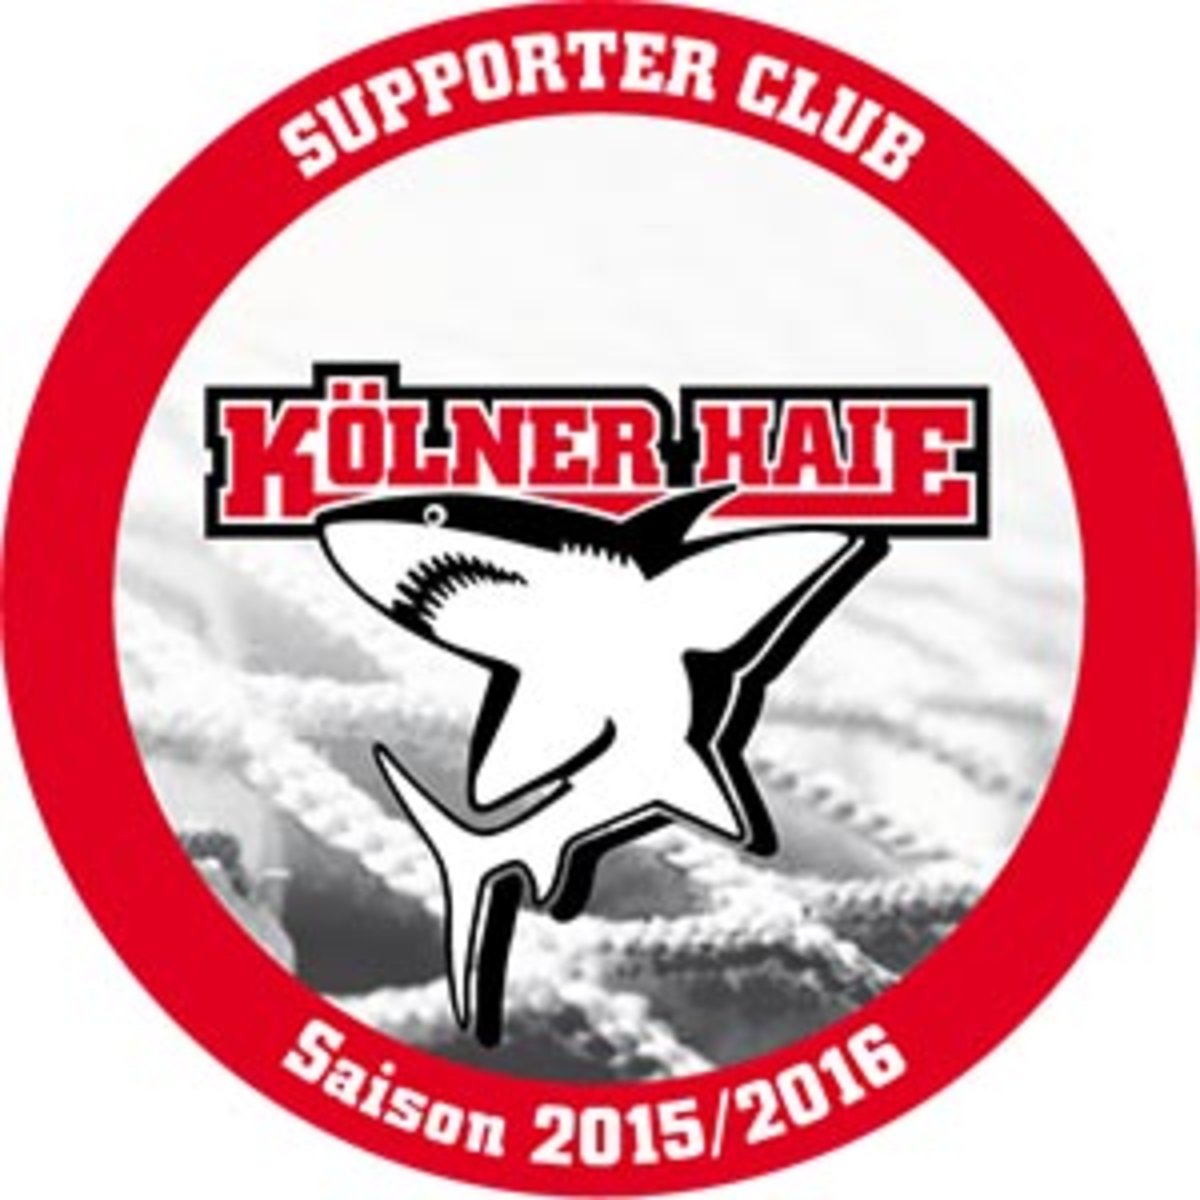 ALDAK als Supporter Club der Kölner Haie 2015/16